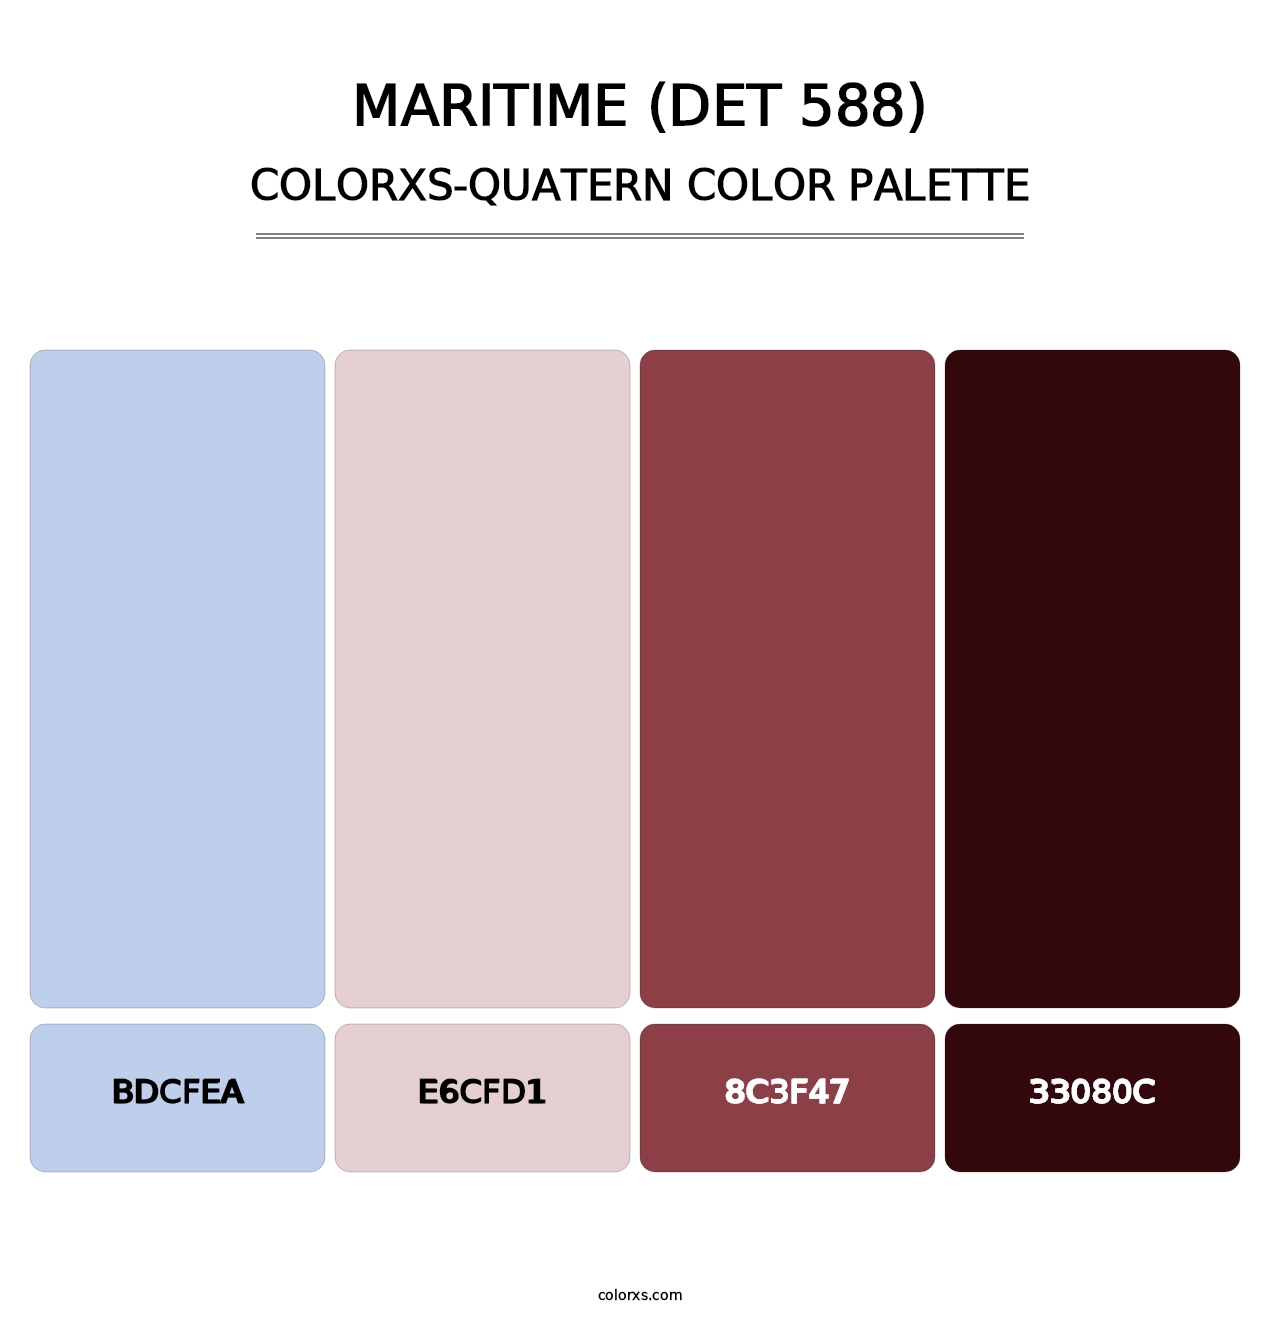 Maritime (DET 588) - Colorxs Quatern Palette